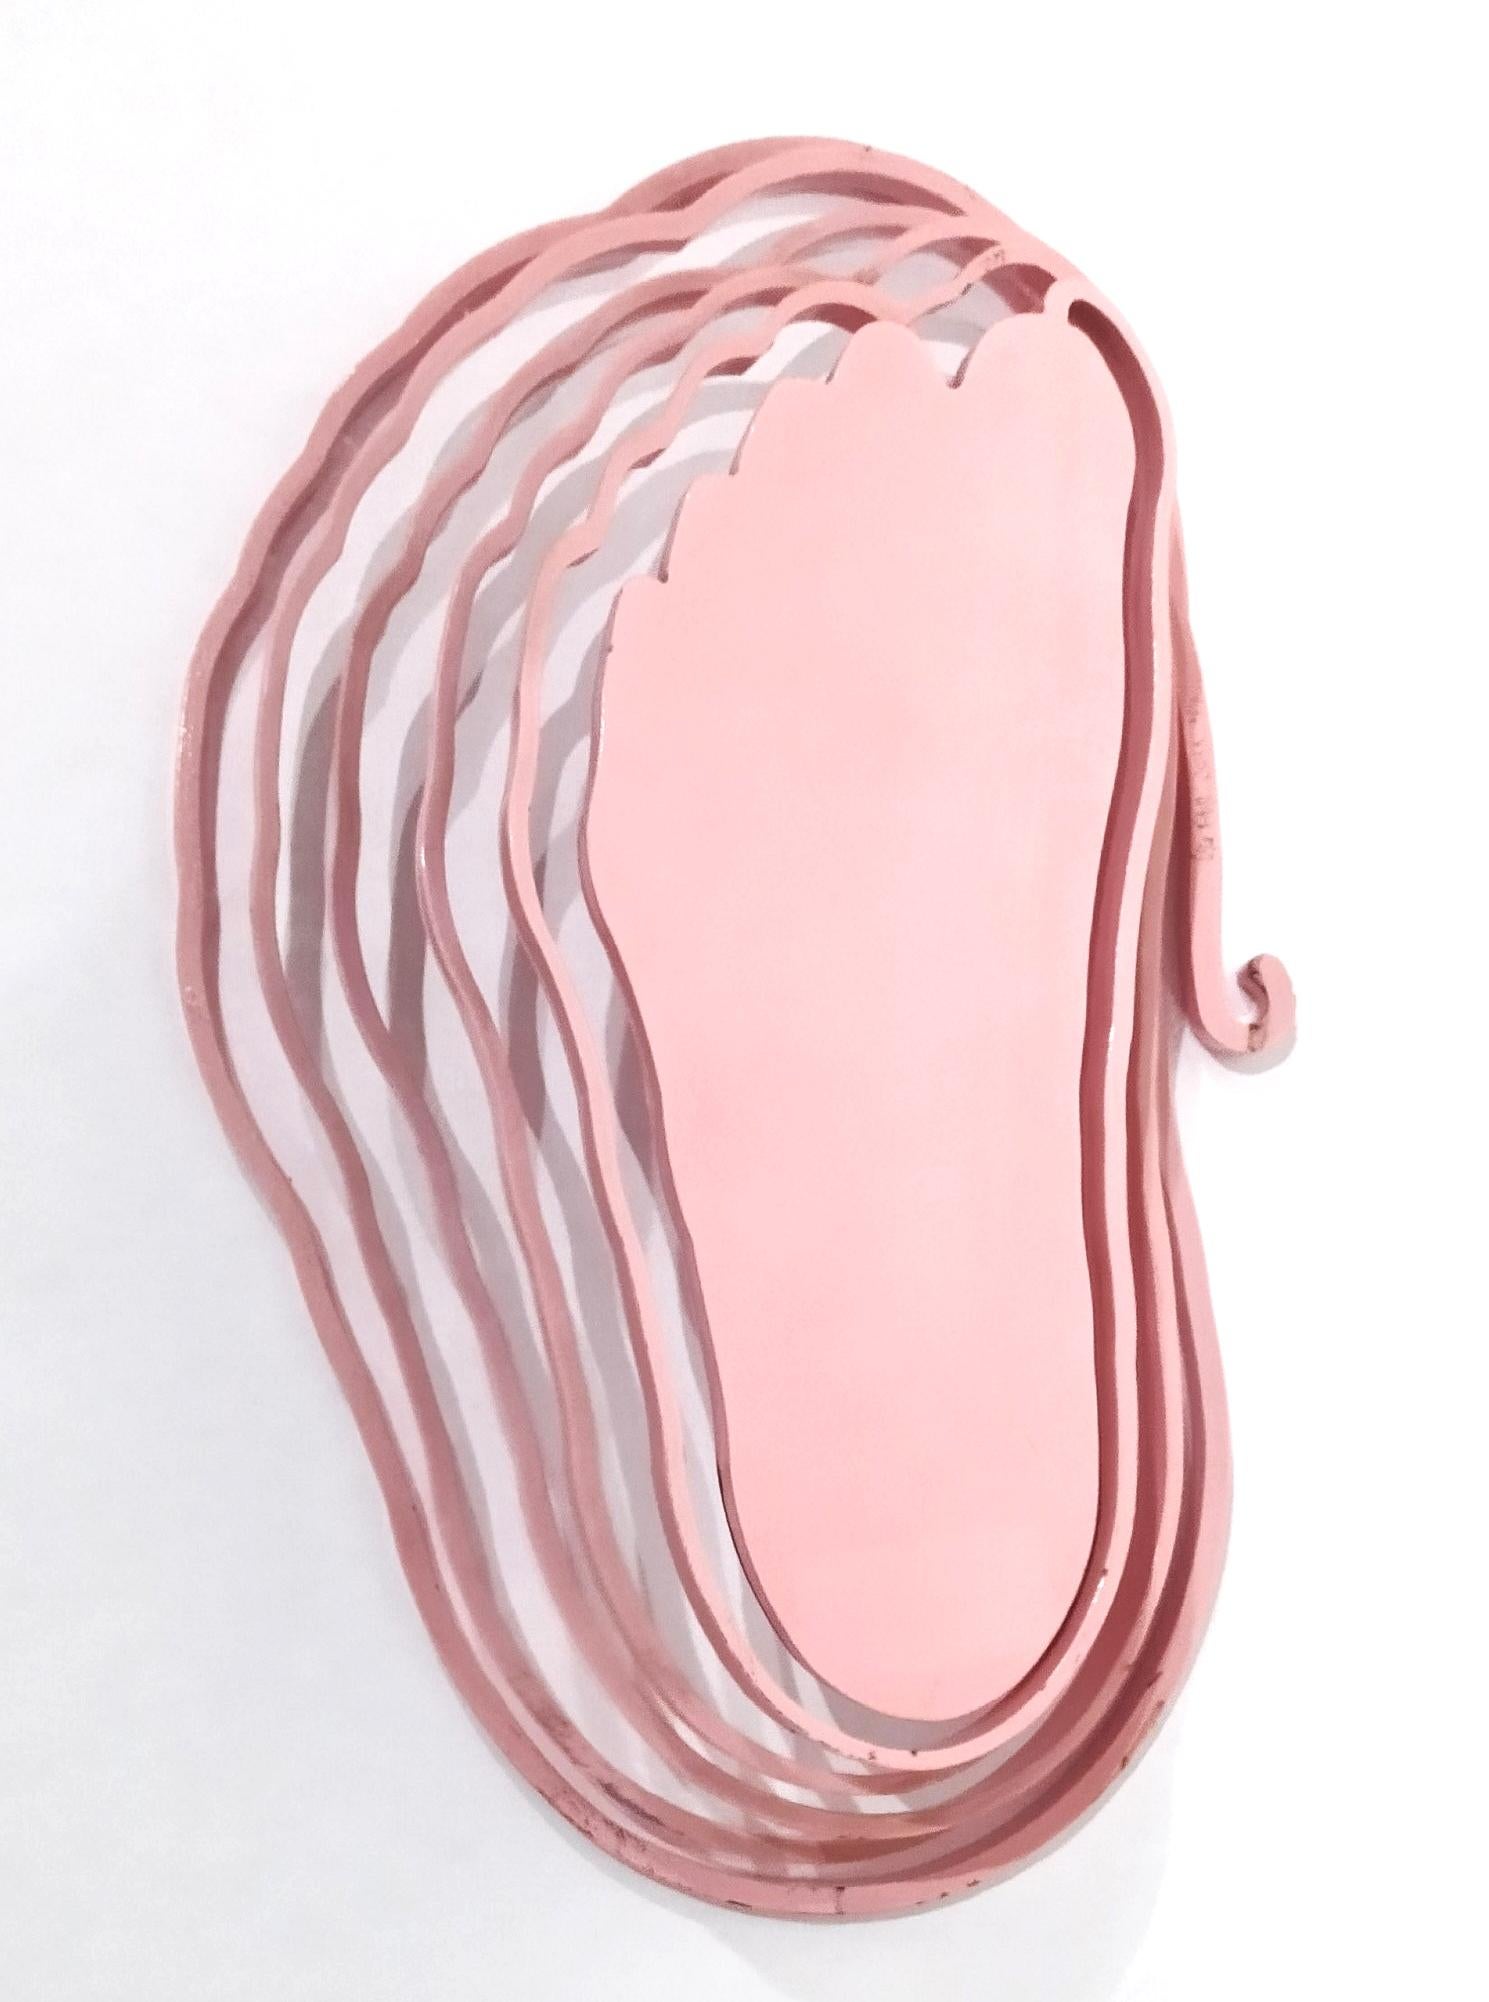 Sculpture cinétique unique en acier Mild "Pink Footprint" (gravure sur pied rose)